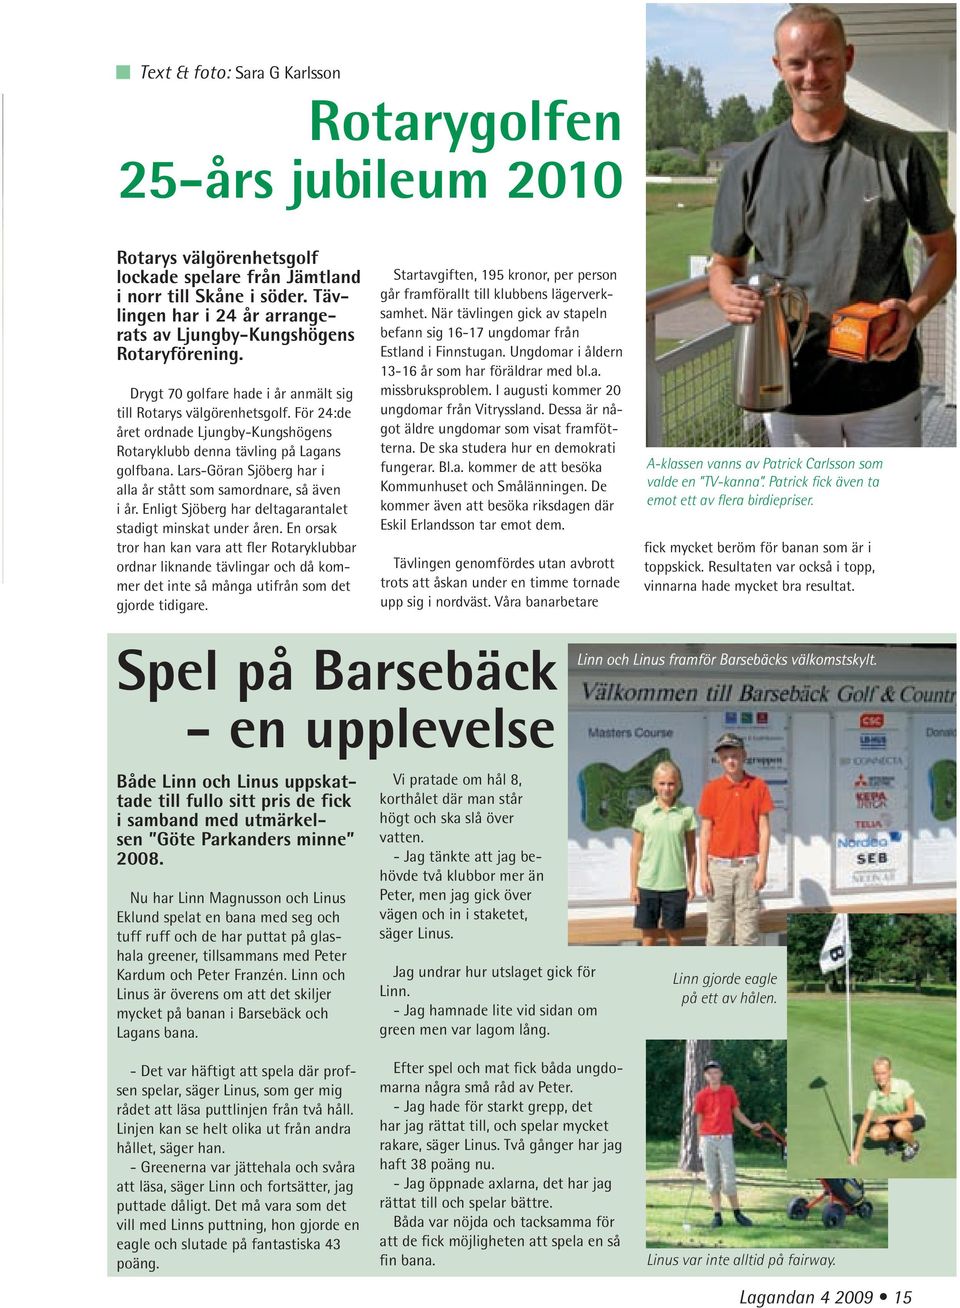 För 24:de året ordnade Ljungby-Kungshögens Rotaryklubb denna tävling på Lagans golfbana. Lars-Göran Sjöberg har i alla år stått som samordnare, så även i år.